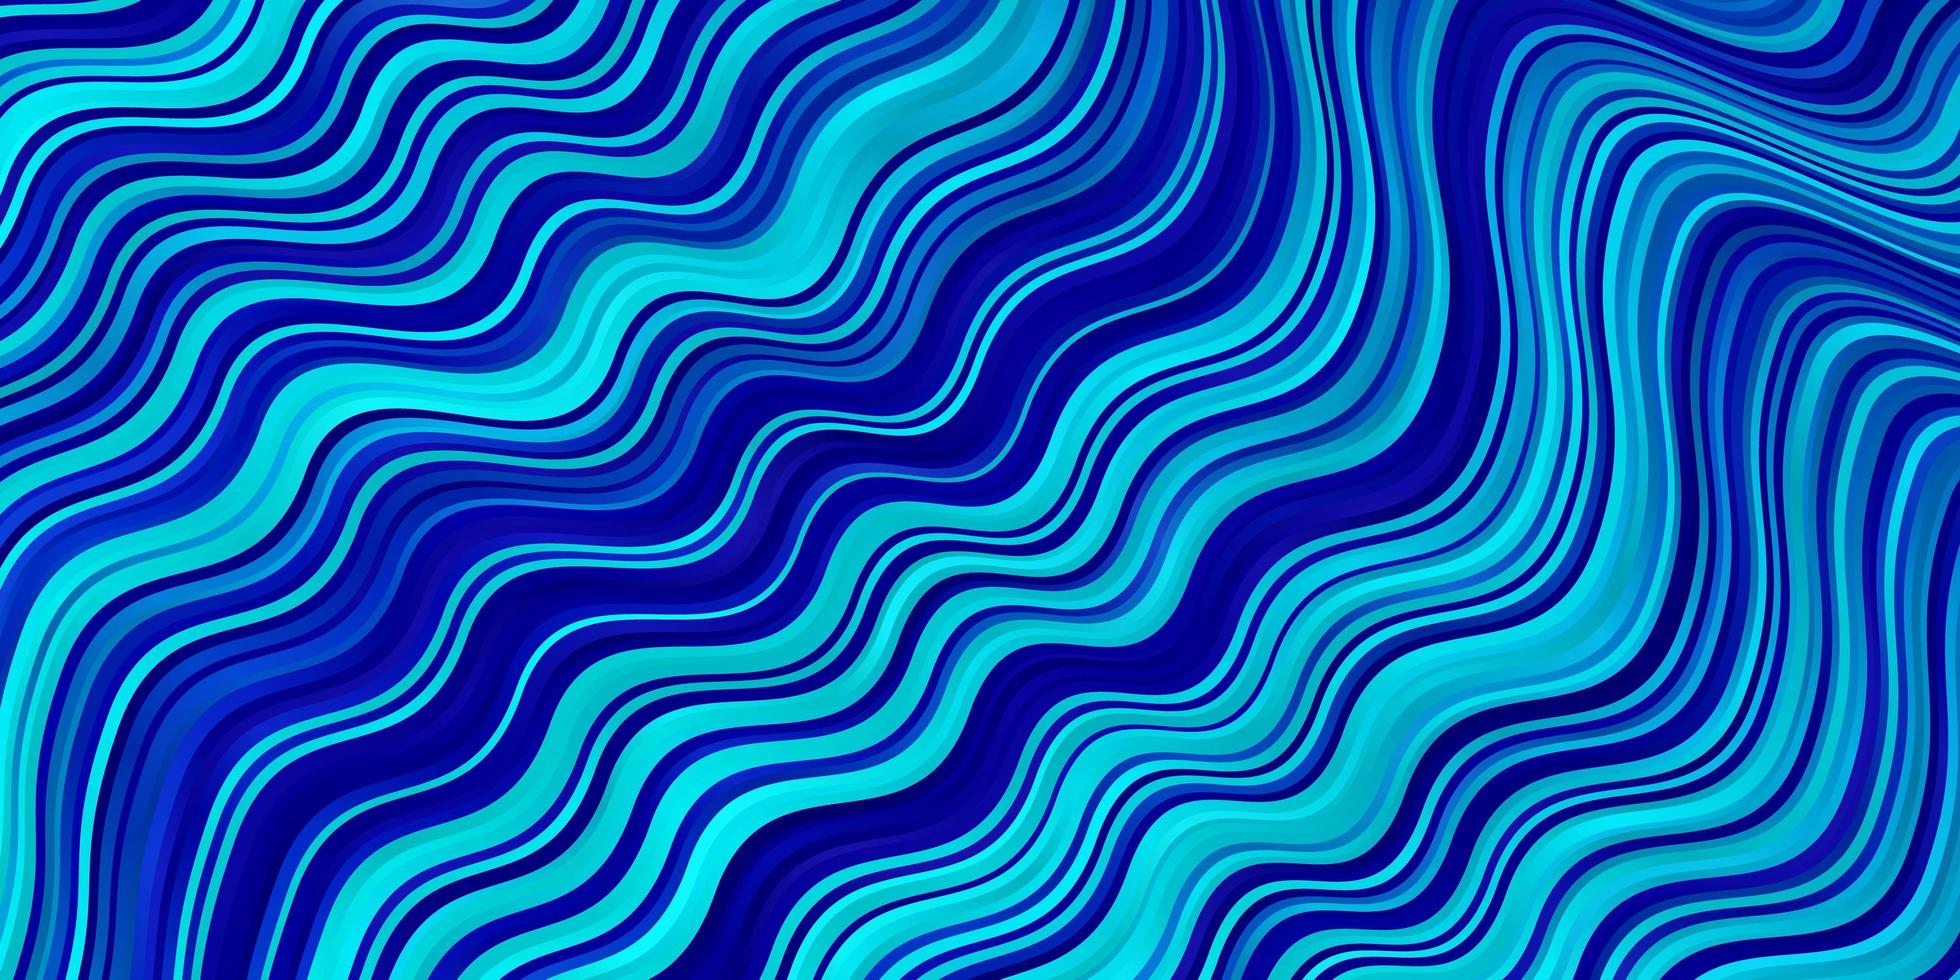 ljusrosa blå vektormall med linjer abstrakt illustration med bandy lutning linjer design för ditt företags marknadsföring vektor